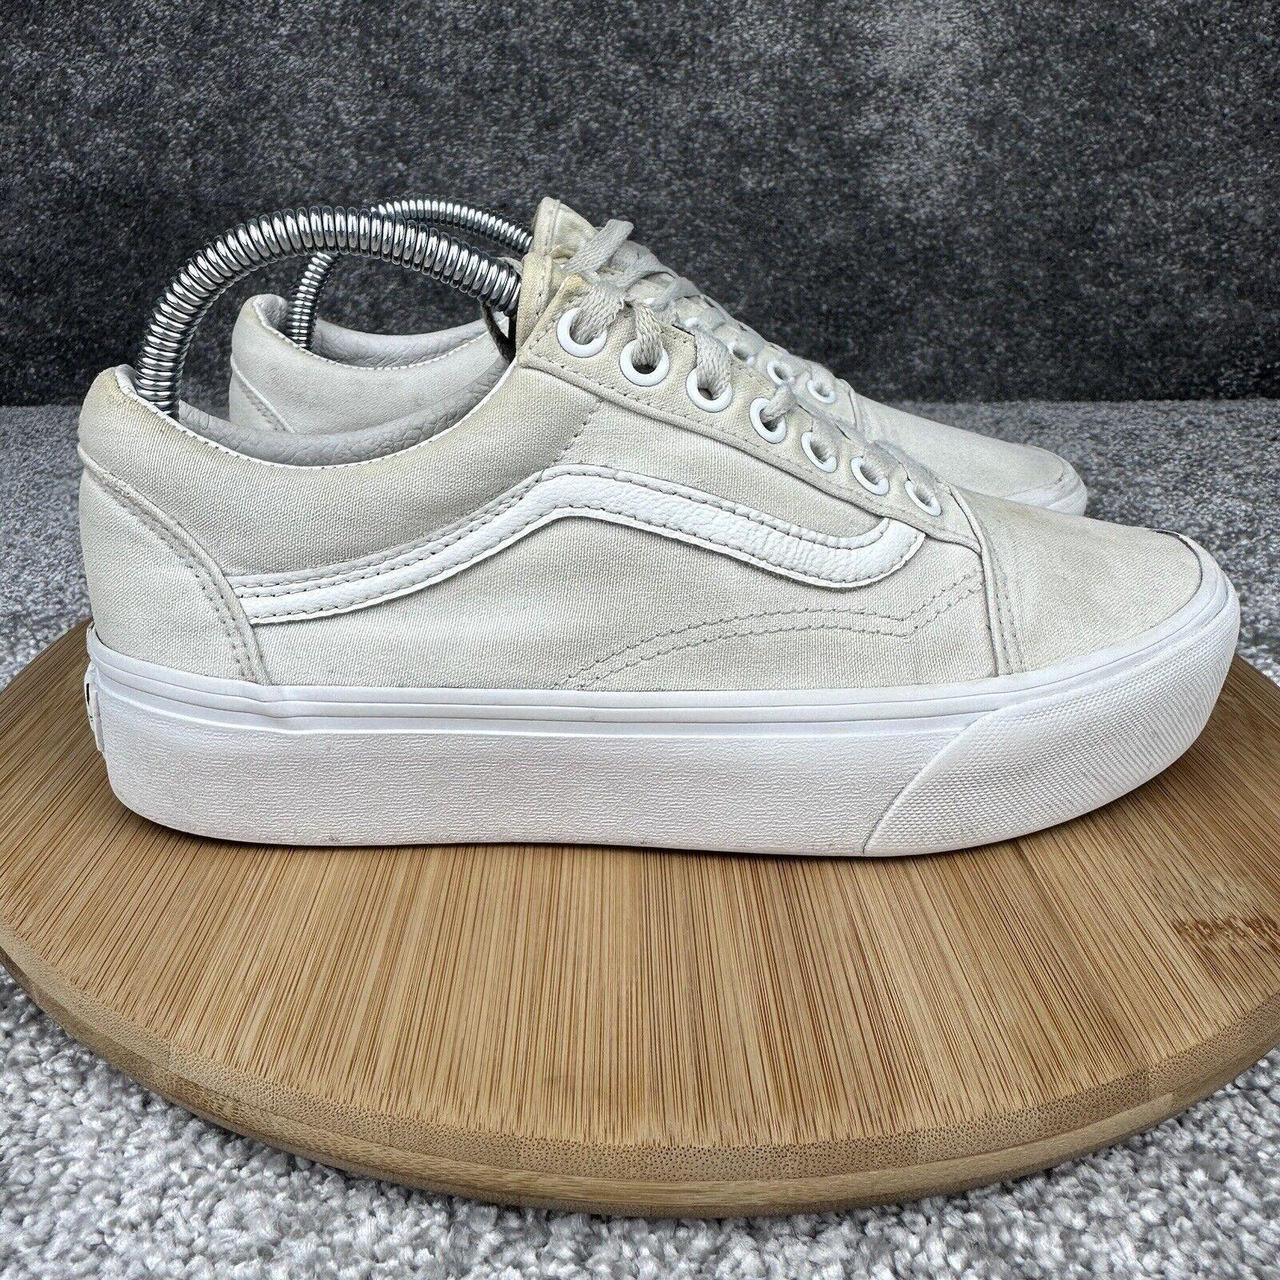 Vans Old Skool Platform Sneakers Womens 8.5 White... - Depop